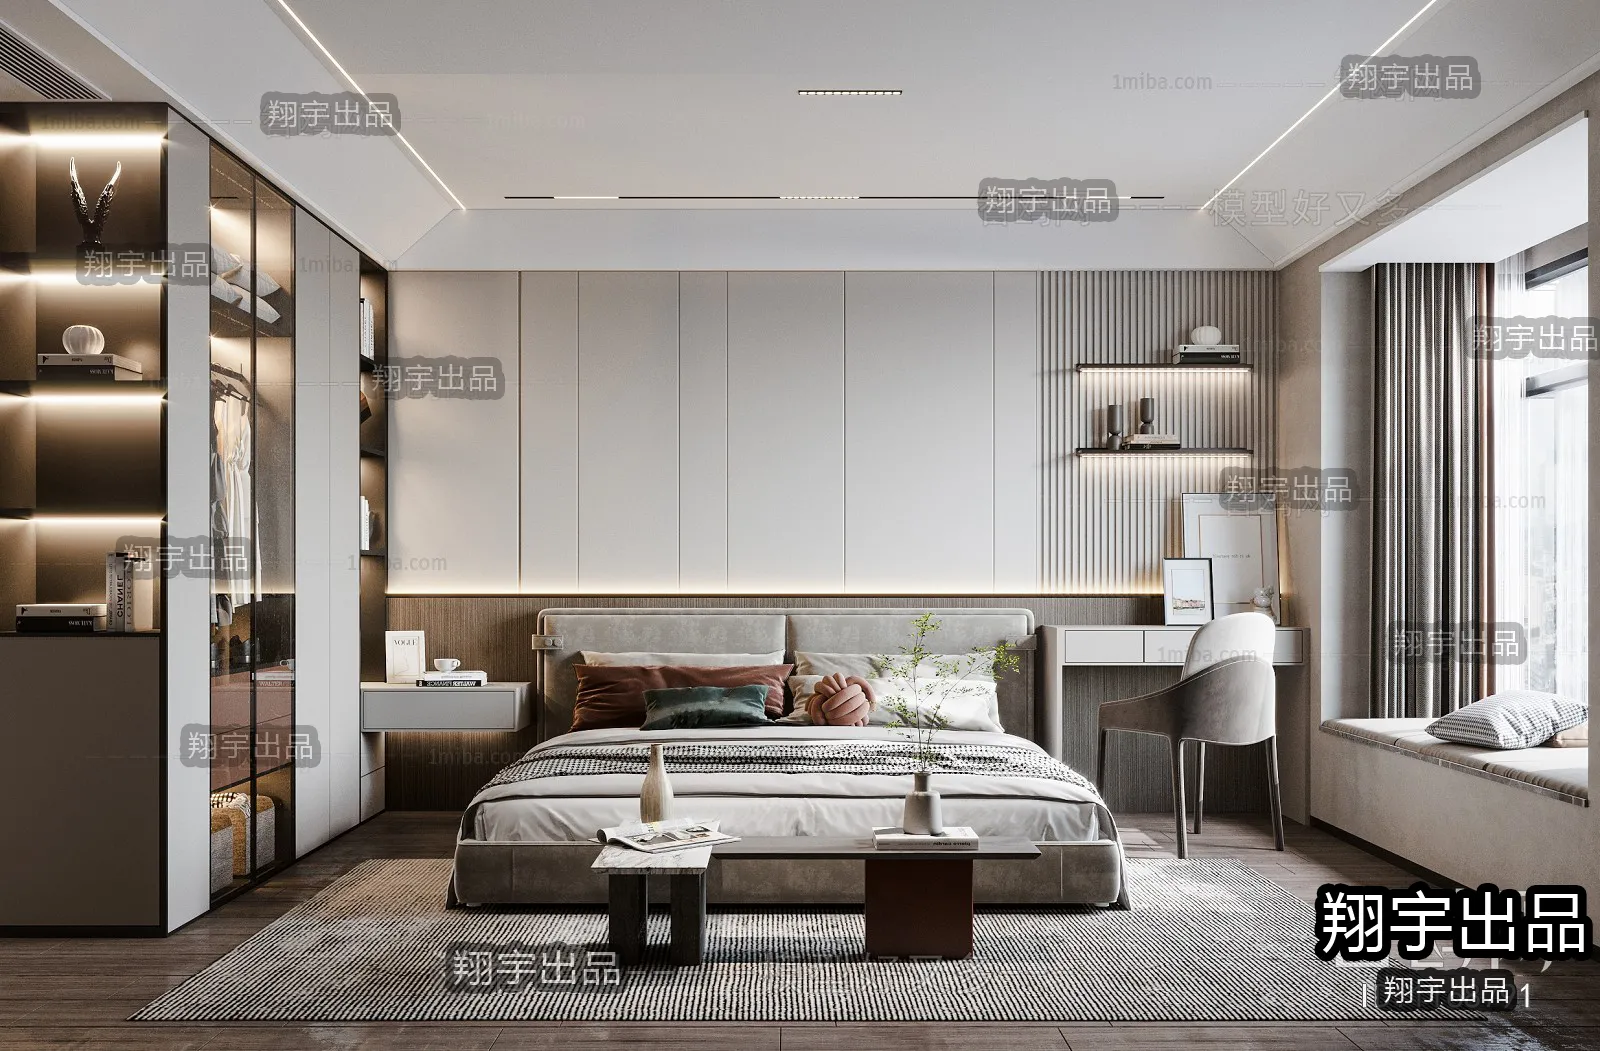 Bedroom – Modern Interior Design – 3D Models – 009